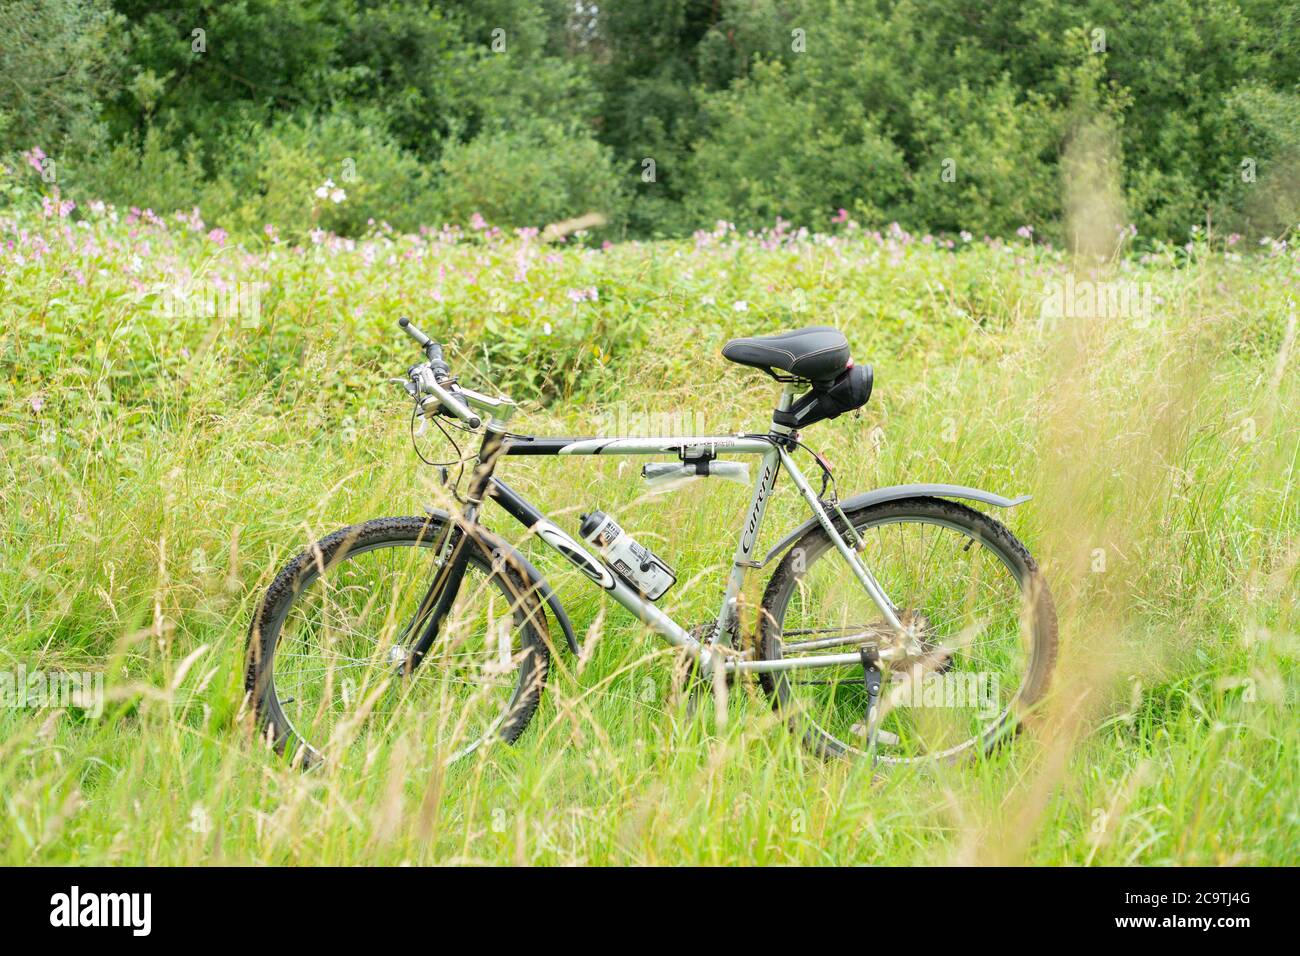 Carrera Vulcan silver Halfords Hybrid-Bike auf Trail oder Weg in dickem Laub oder Gras. Bewegung, Aktivität, Radfahren, Fitness, fit halten, im Freien. VEREINIGTES KÖNIGREICH Stockfoto